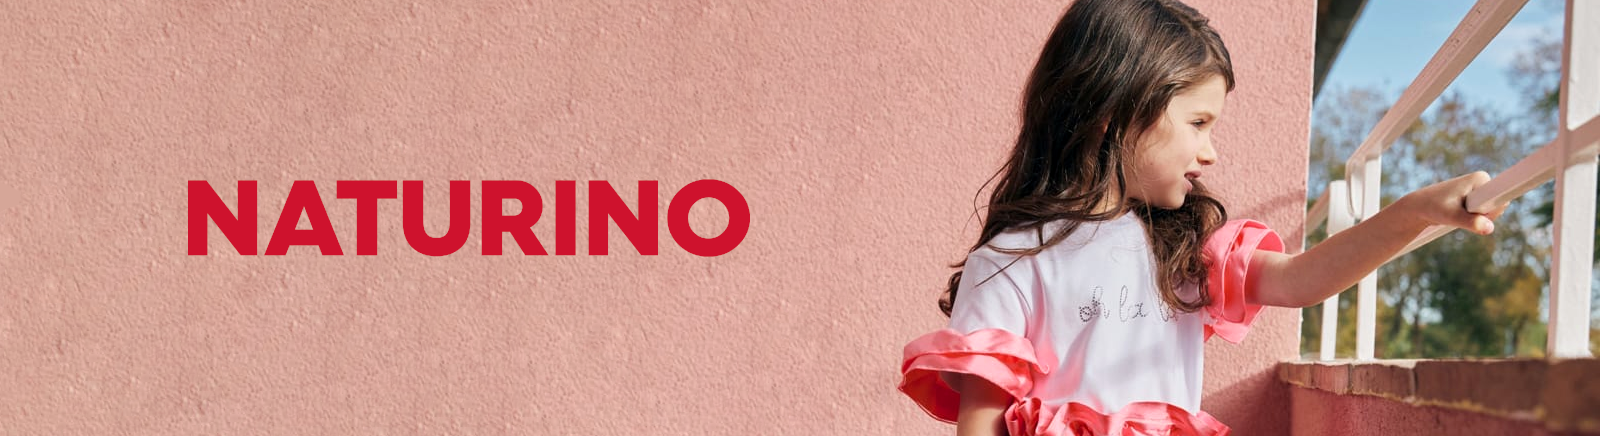 Juppen: Naturino/Falcotto Halbschuhe für Mädchen und Jungen online shoppen